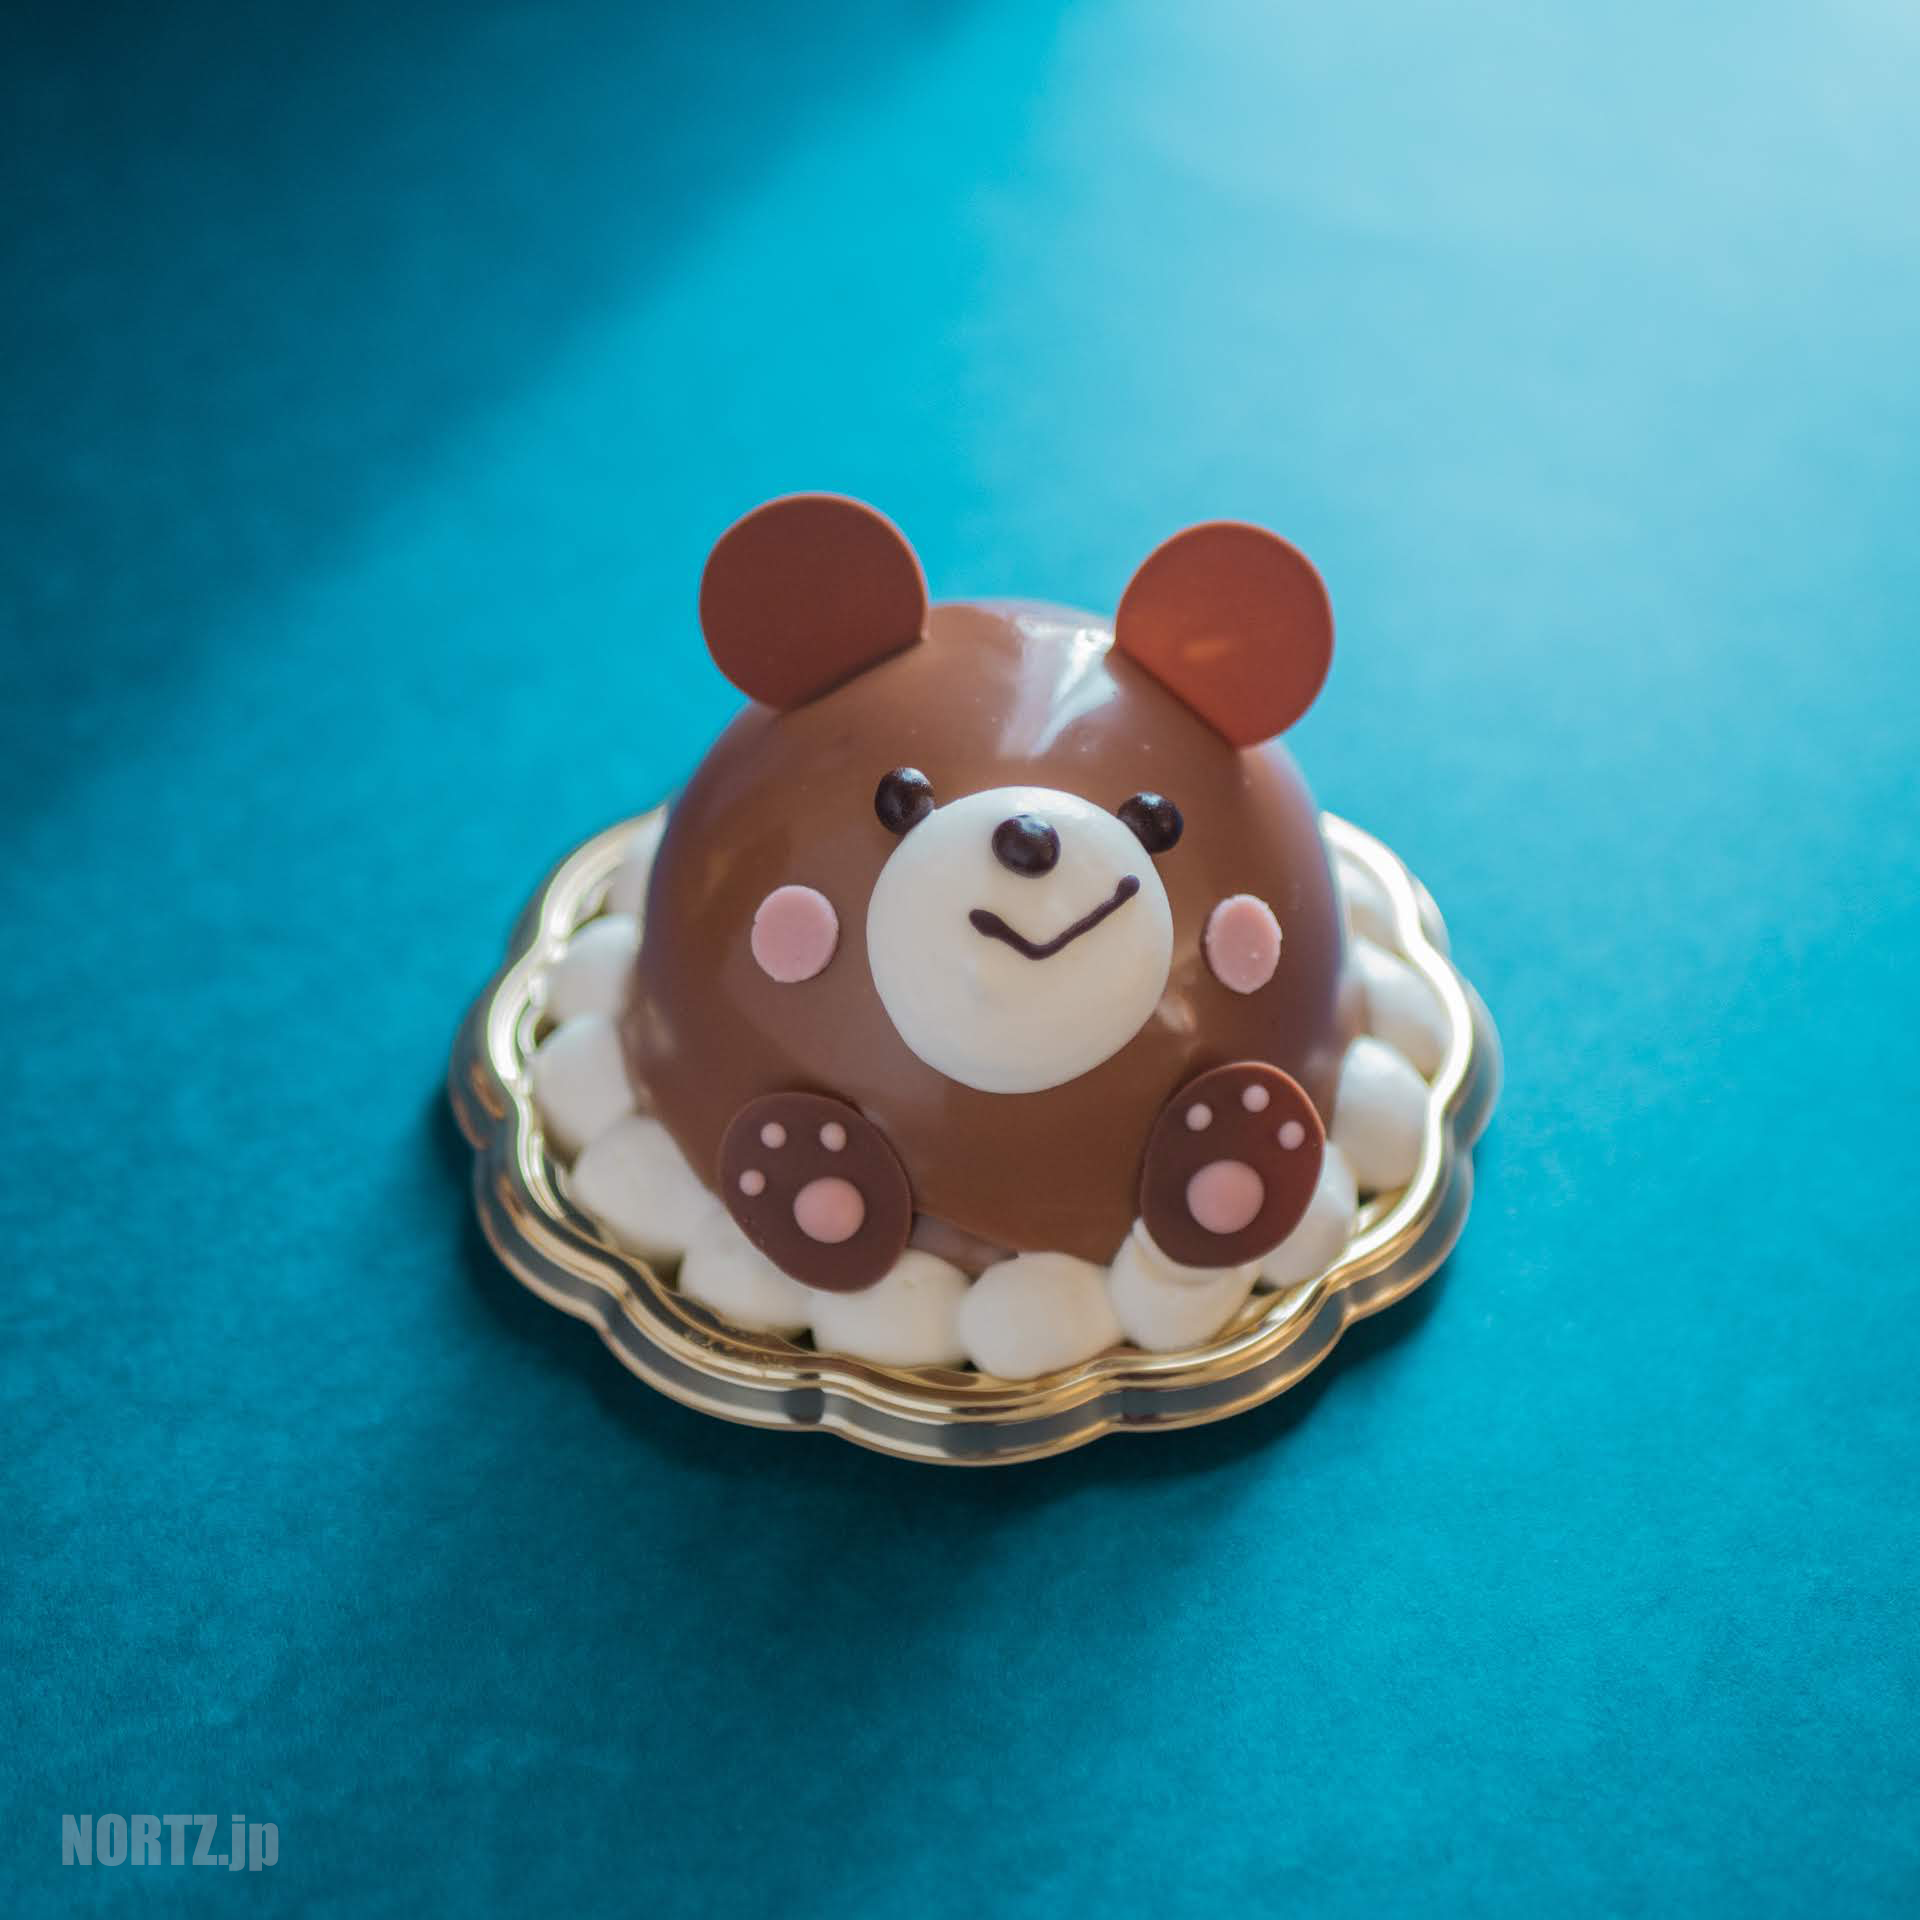 夢を描くお菓子屋さんパレット 札幌真駒内でプレゼントにもおすすめな2段ホールケーキにアニマルケーキも